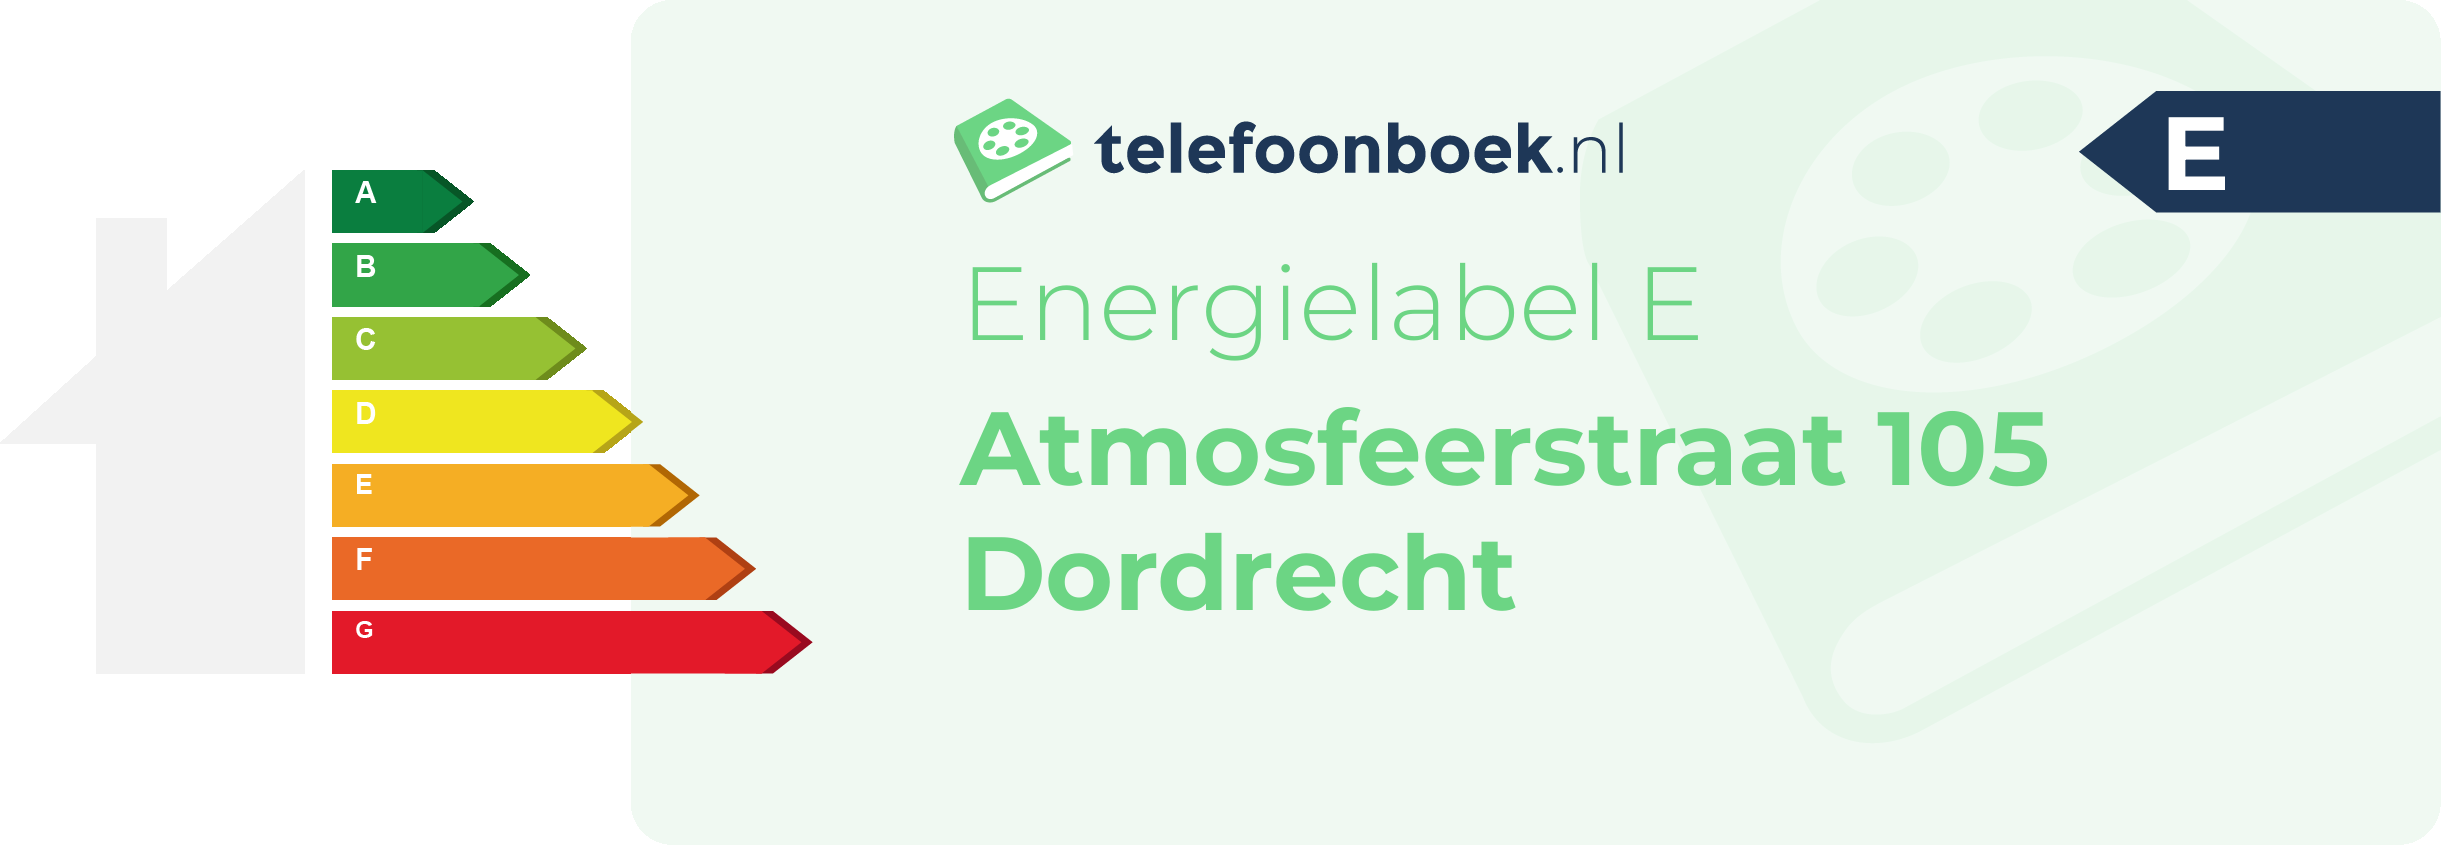 Energielabel Atmosfeerstraat 105 Dordrecht